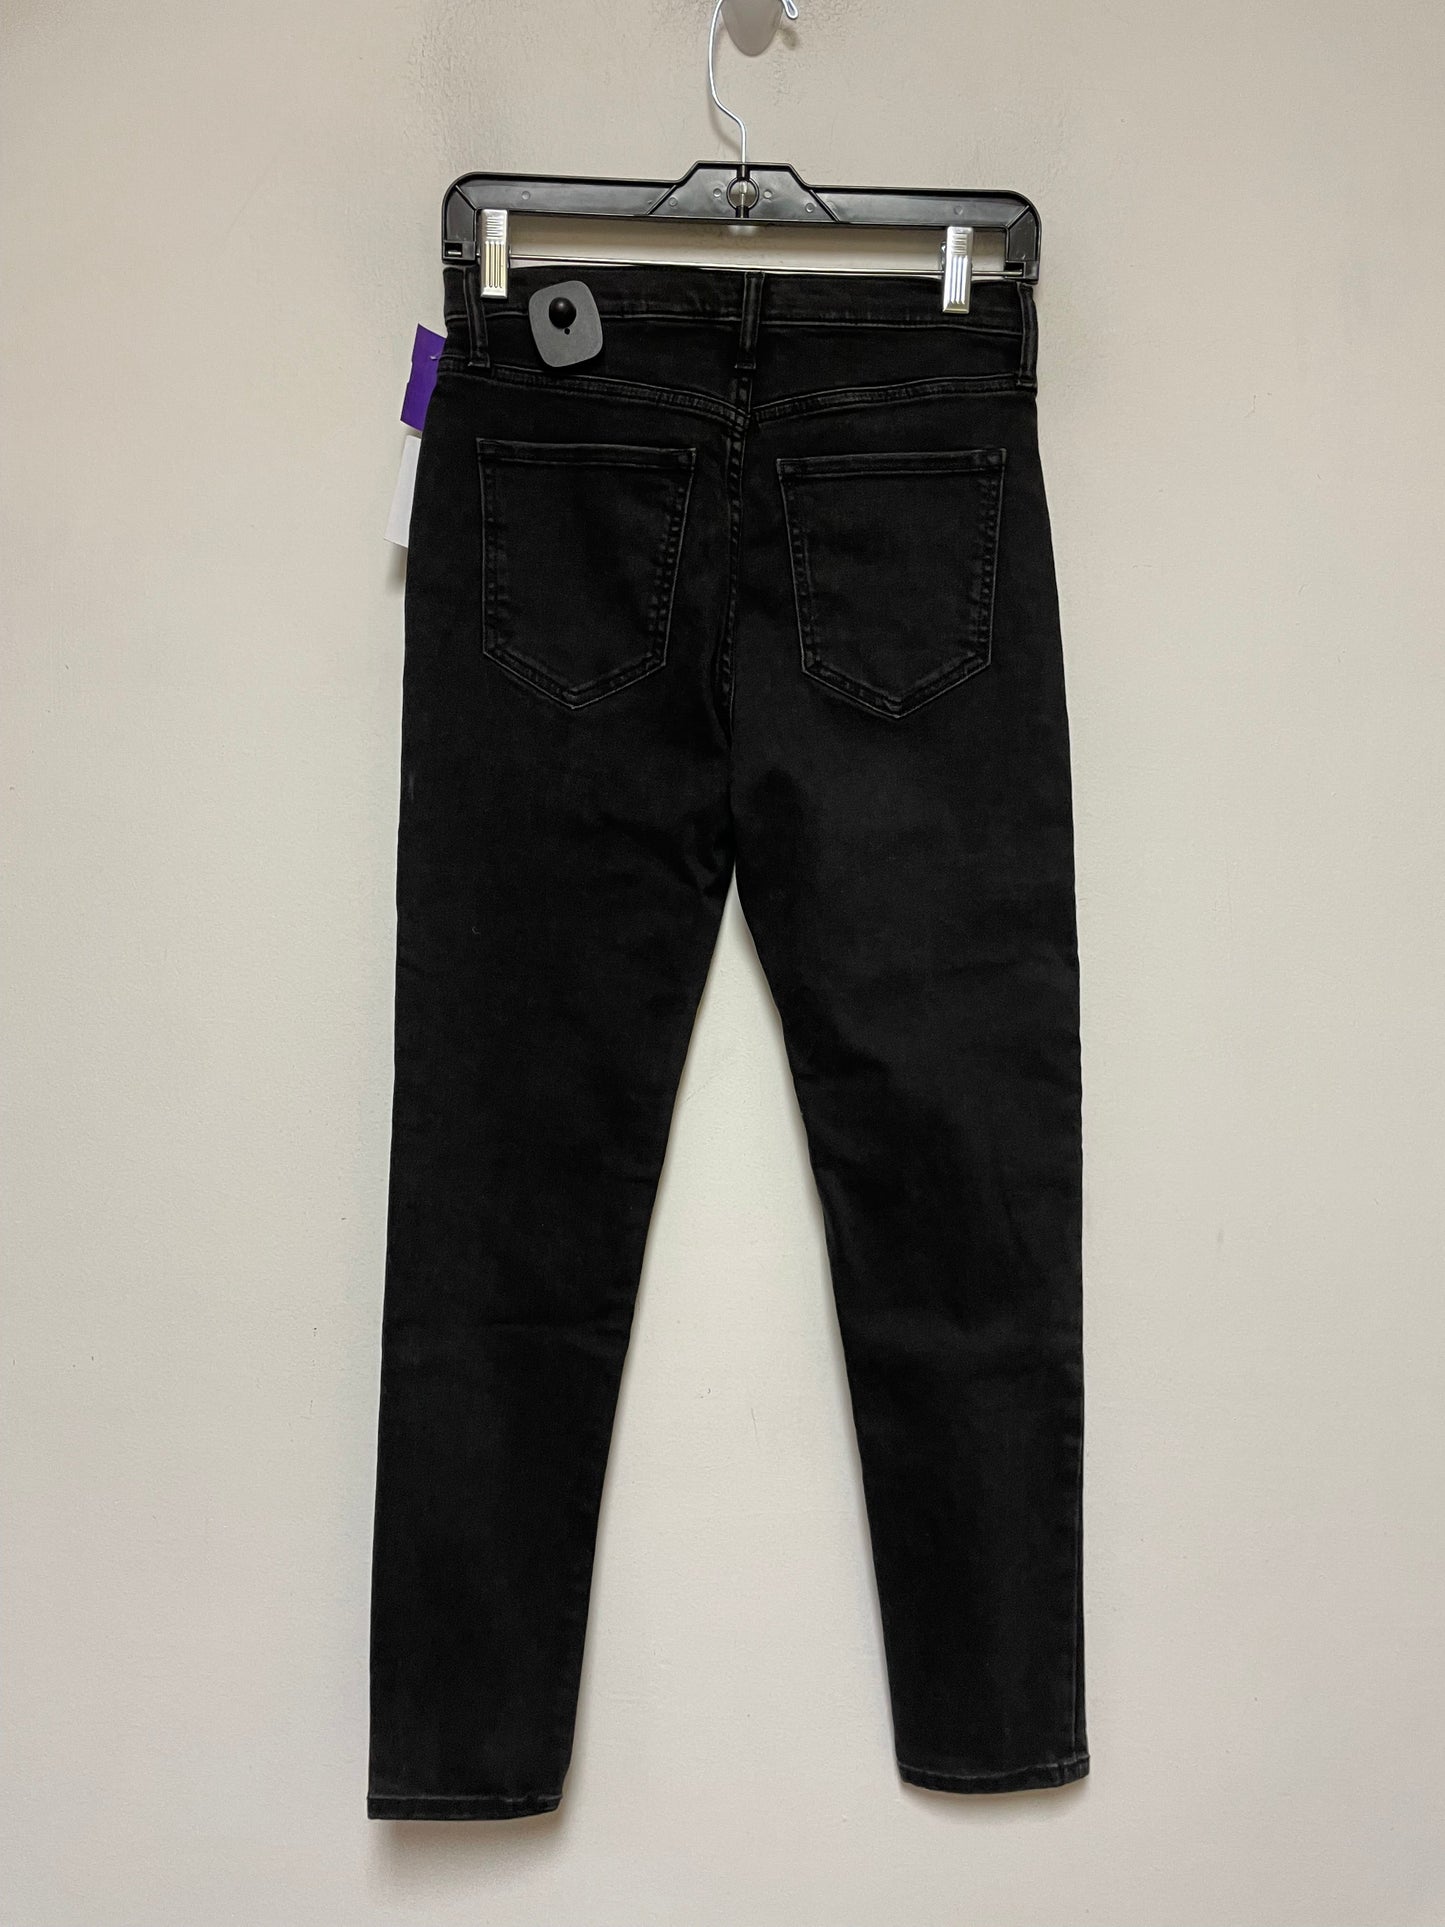 Black Jeans Skinny Banana Republic, Size 4